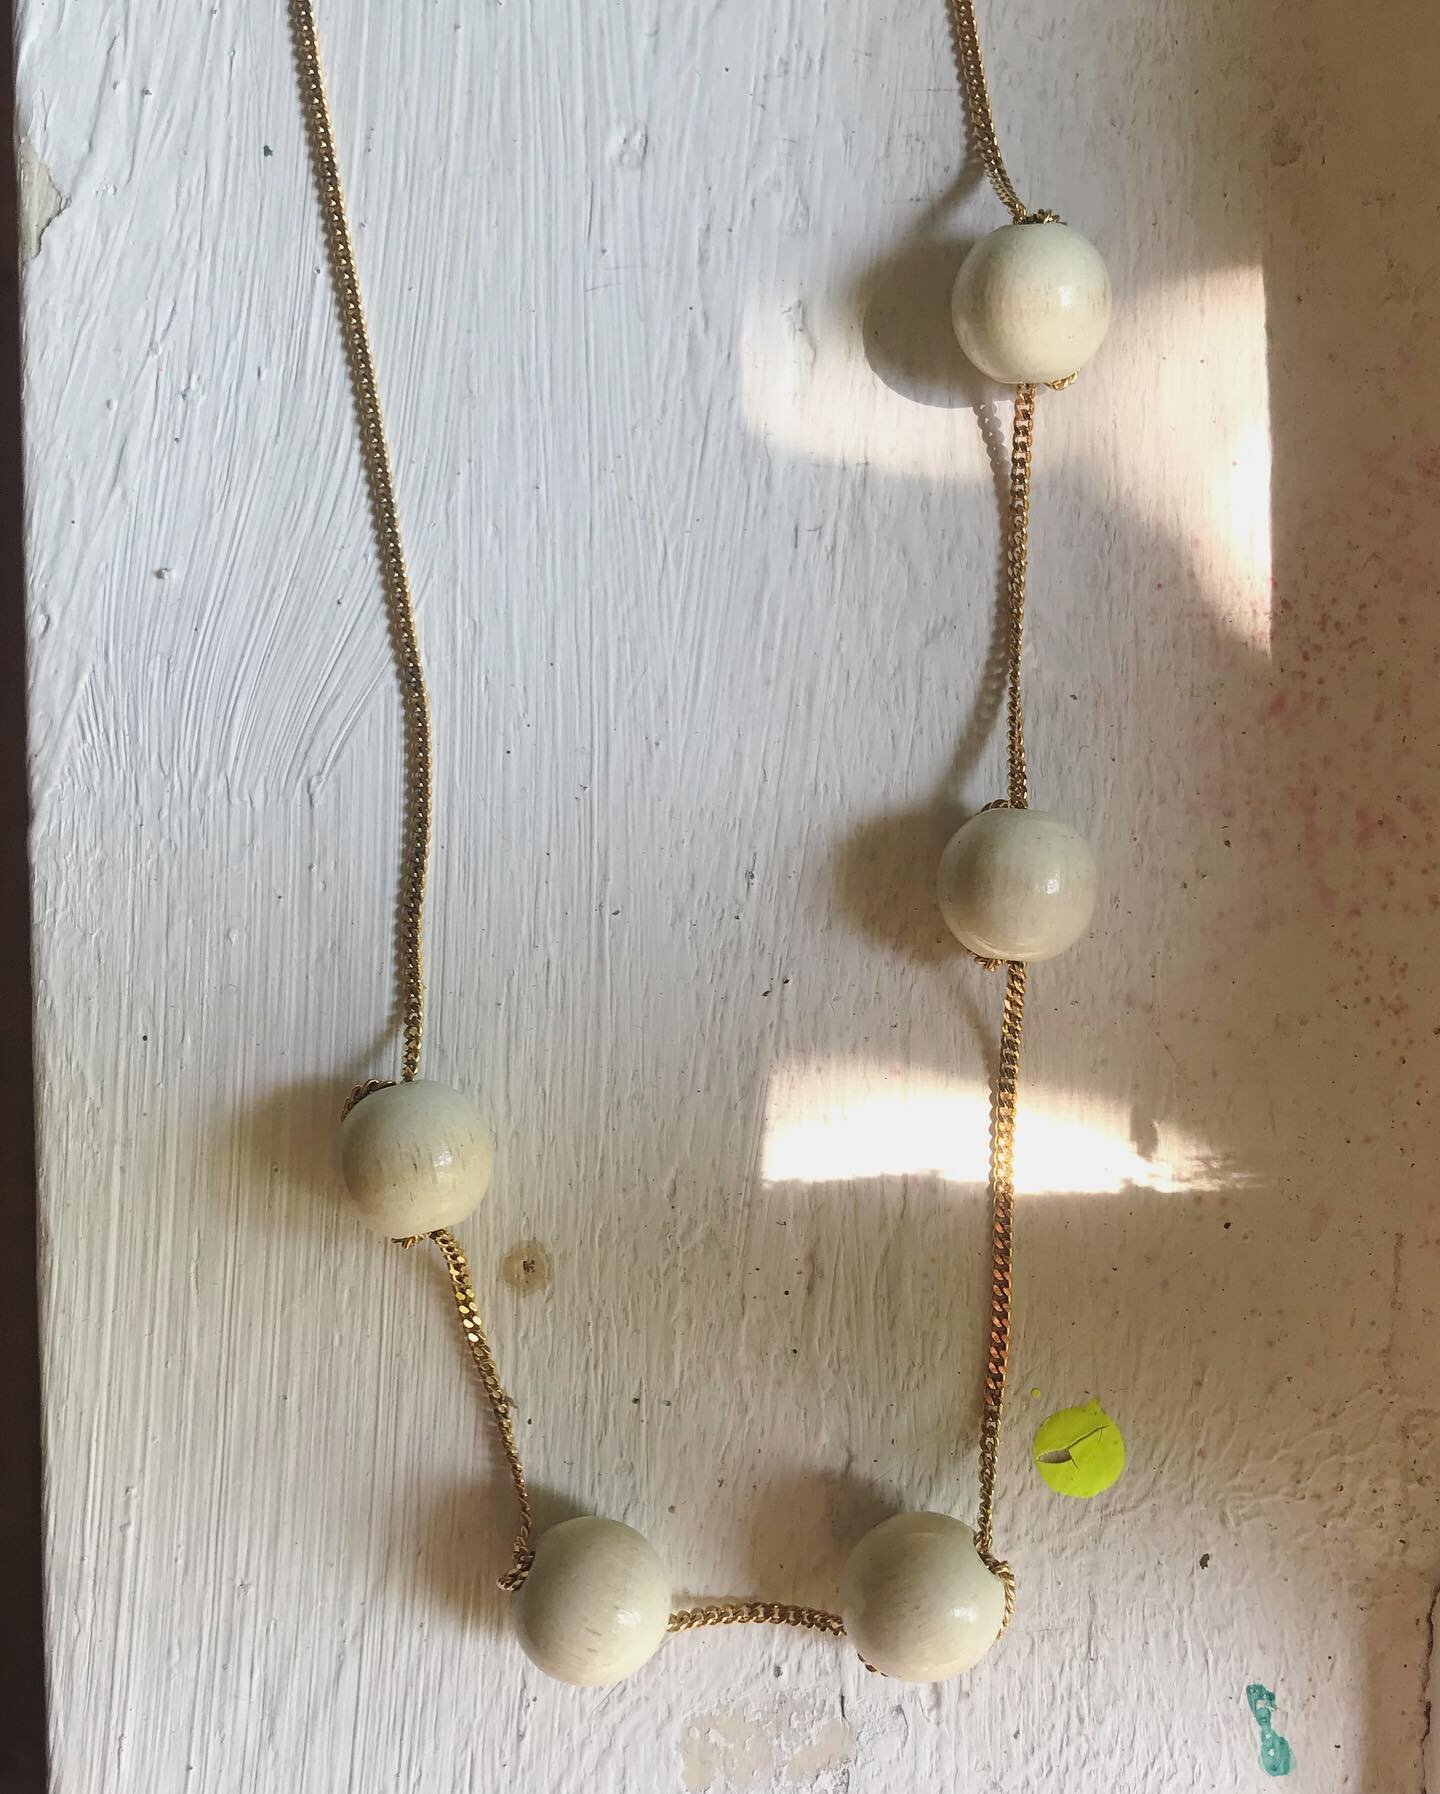 Die Perlen waren mal Bestandteil eines alten Rechnen Werkzeugs f&uuml;r Grundschulkinder. 5 rote, 5 wei&szlig;e, hintereinander aufgef&auml;delt. Ich liebe so alte lackierte Holzsachen. Die Wirkung ist ganz anders als mit neuen #holzperlen. In Kombin